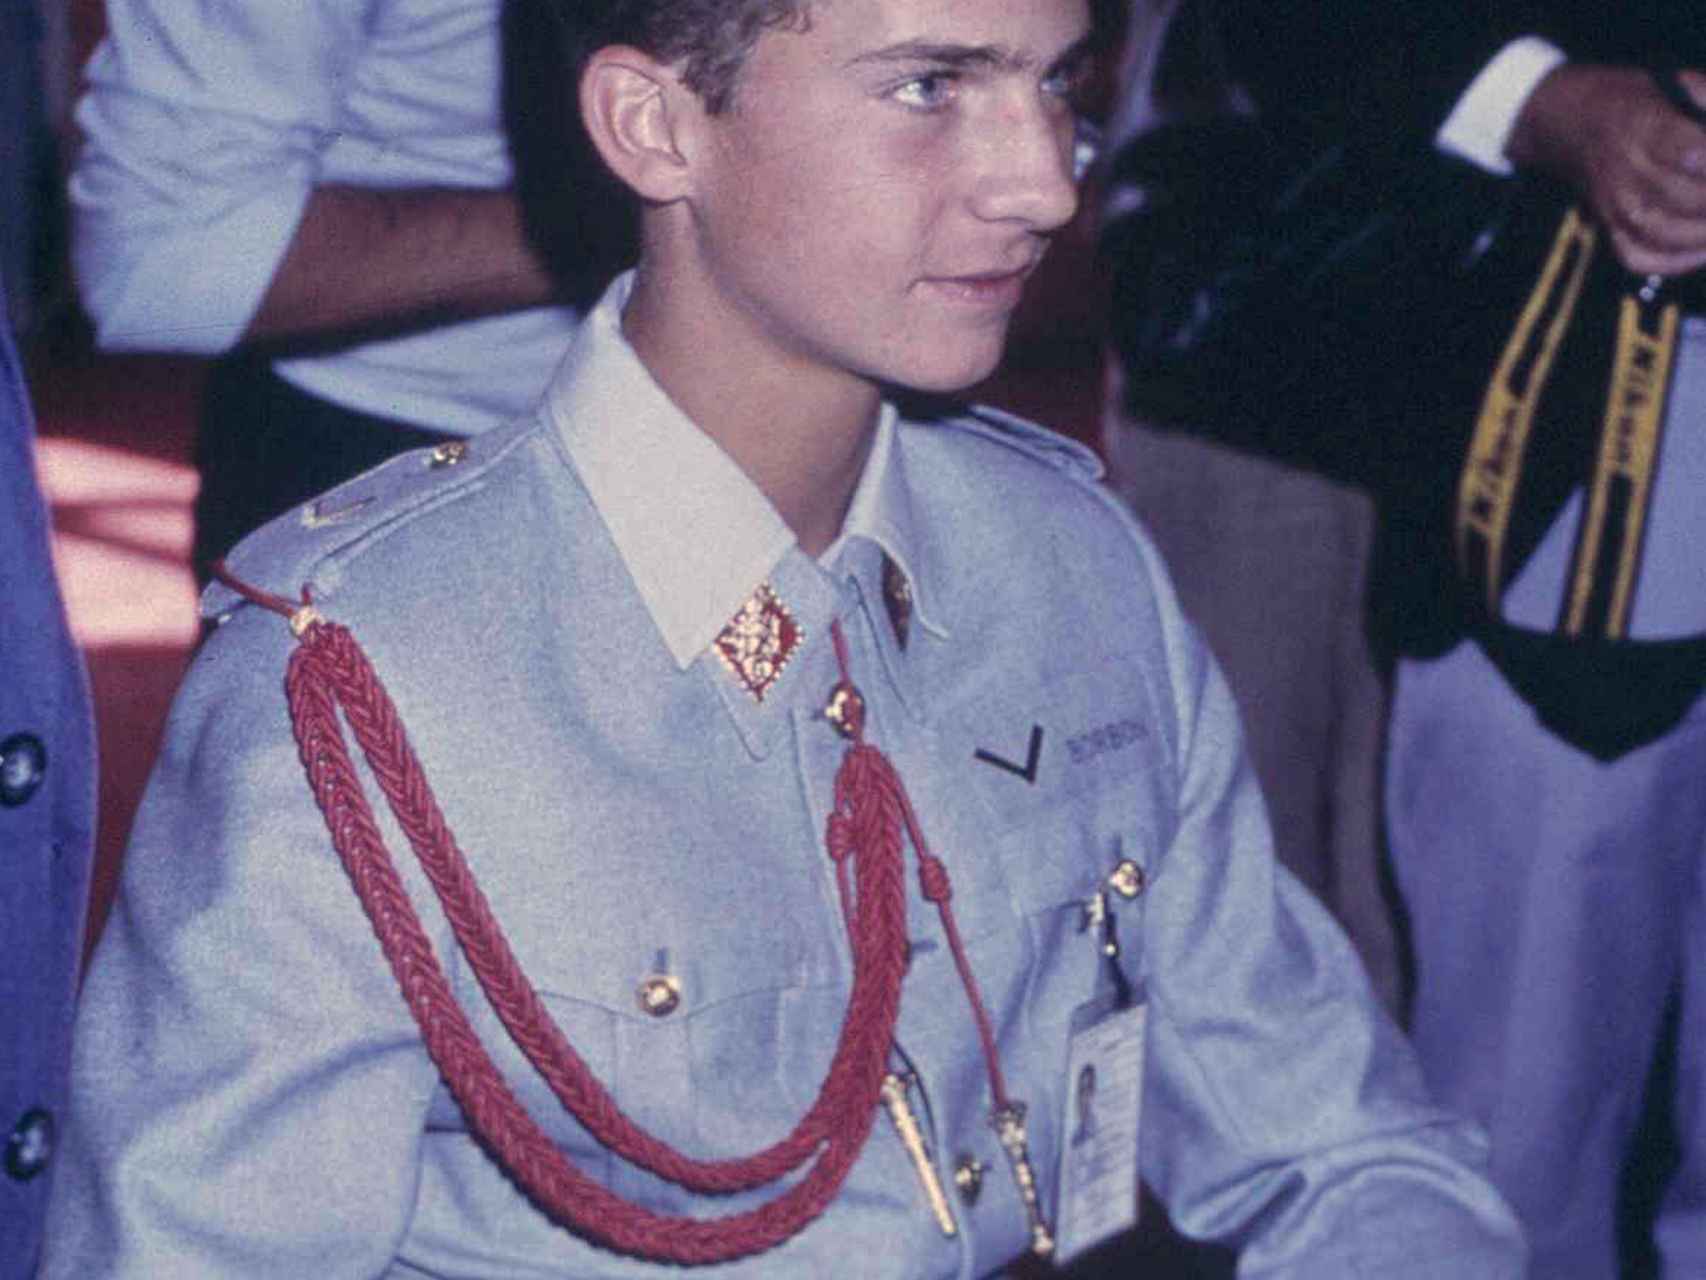 El rey Felipe lució su primer uniforme cuando era apenas un niño.